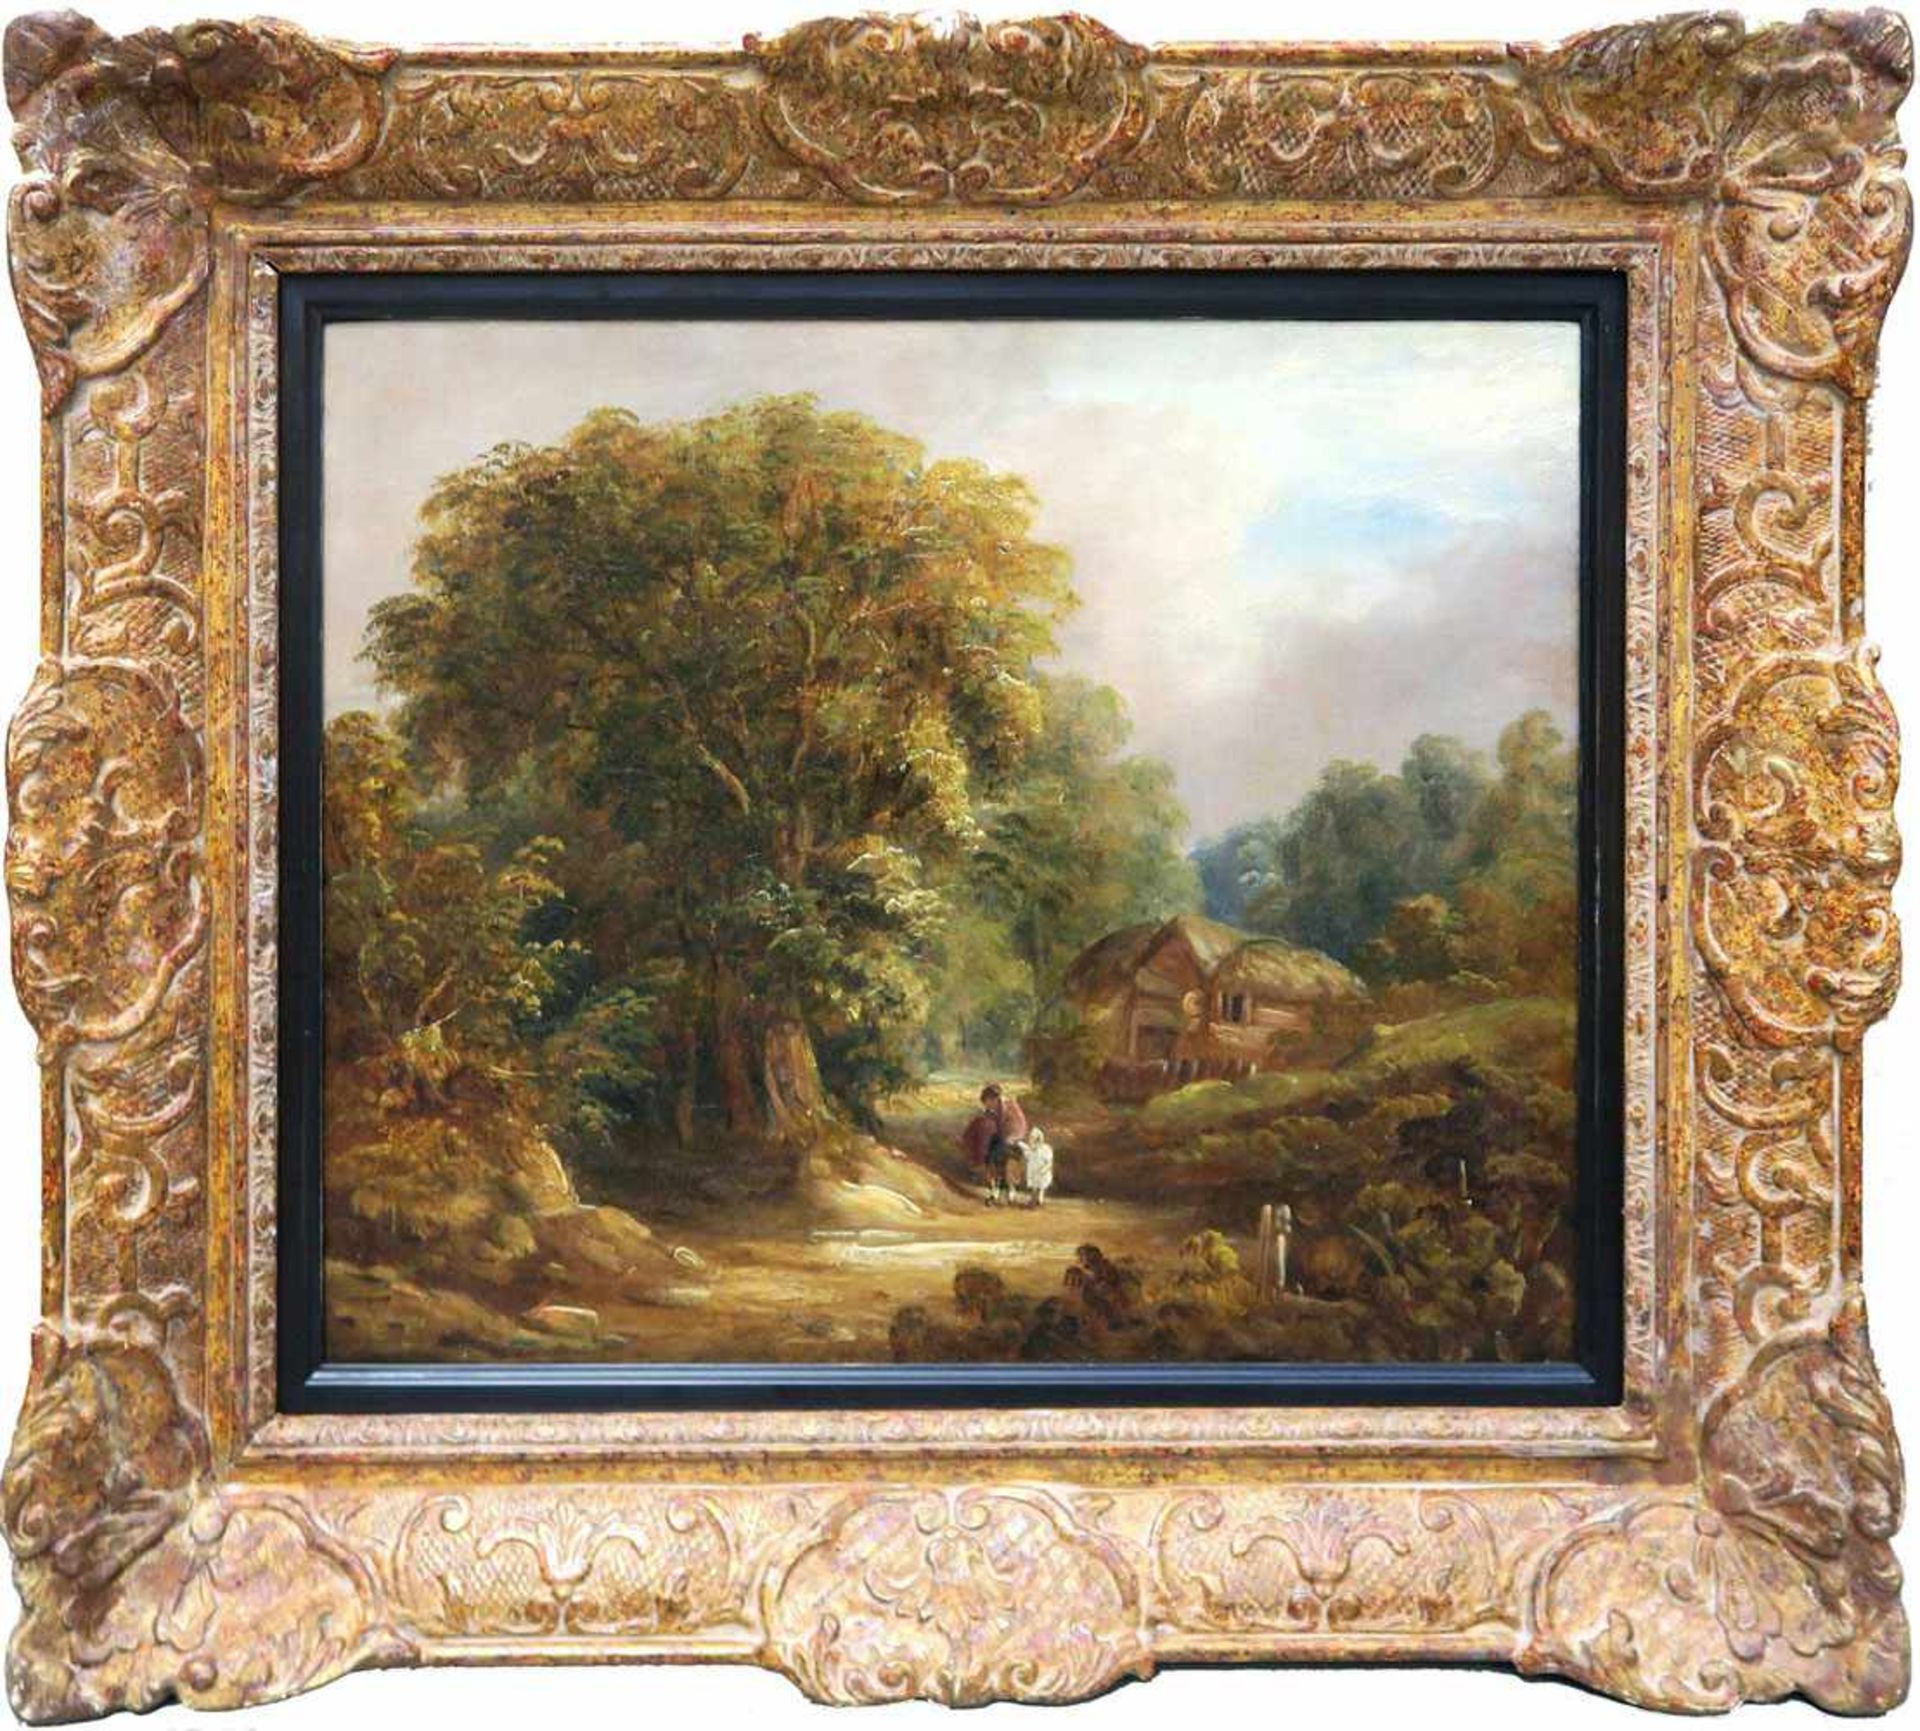 wohl England 19. Jh. Landschaft mit Cottage und Figurenstaffage Öl/Lwd. 36 x 44 cm. Doubliert. Rest. - Bild 3 aus 4